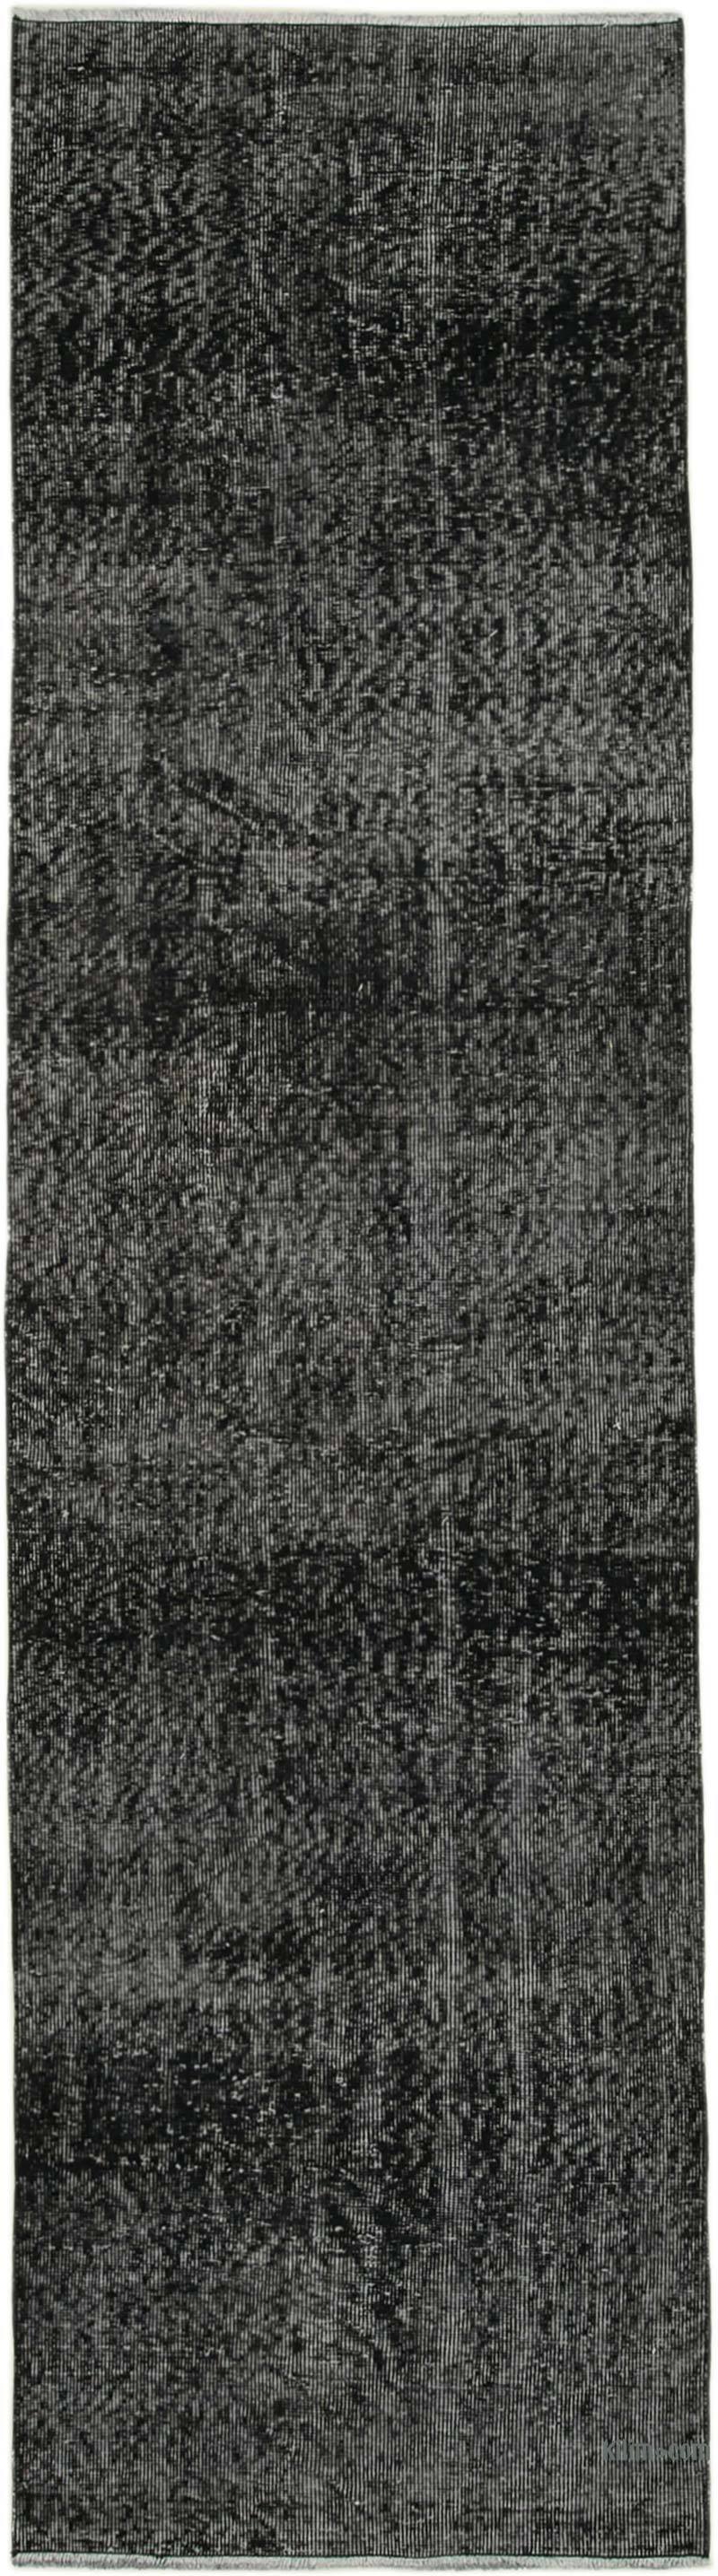 Negro Alfombra de Pasillo Turca Vintage Sobreteñida - 86 cm x 320 cm - K0052211